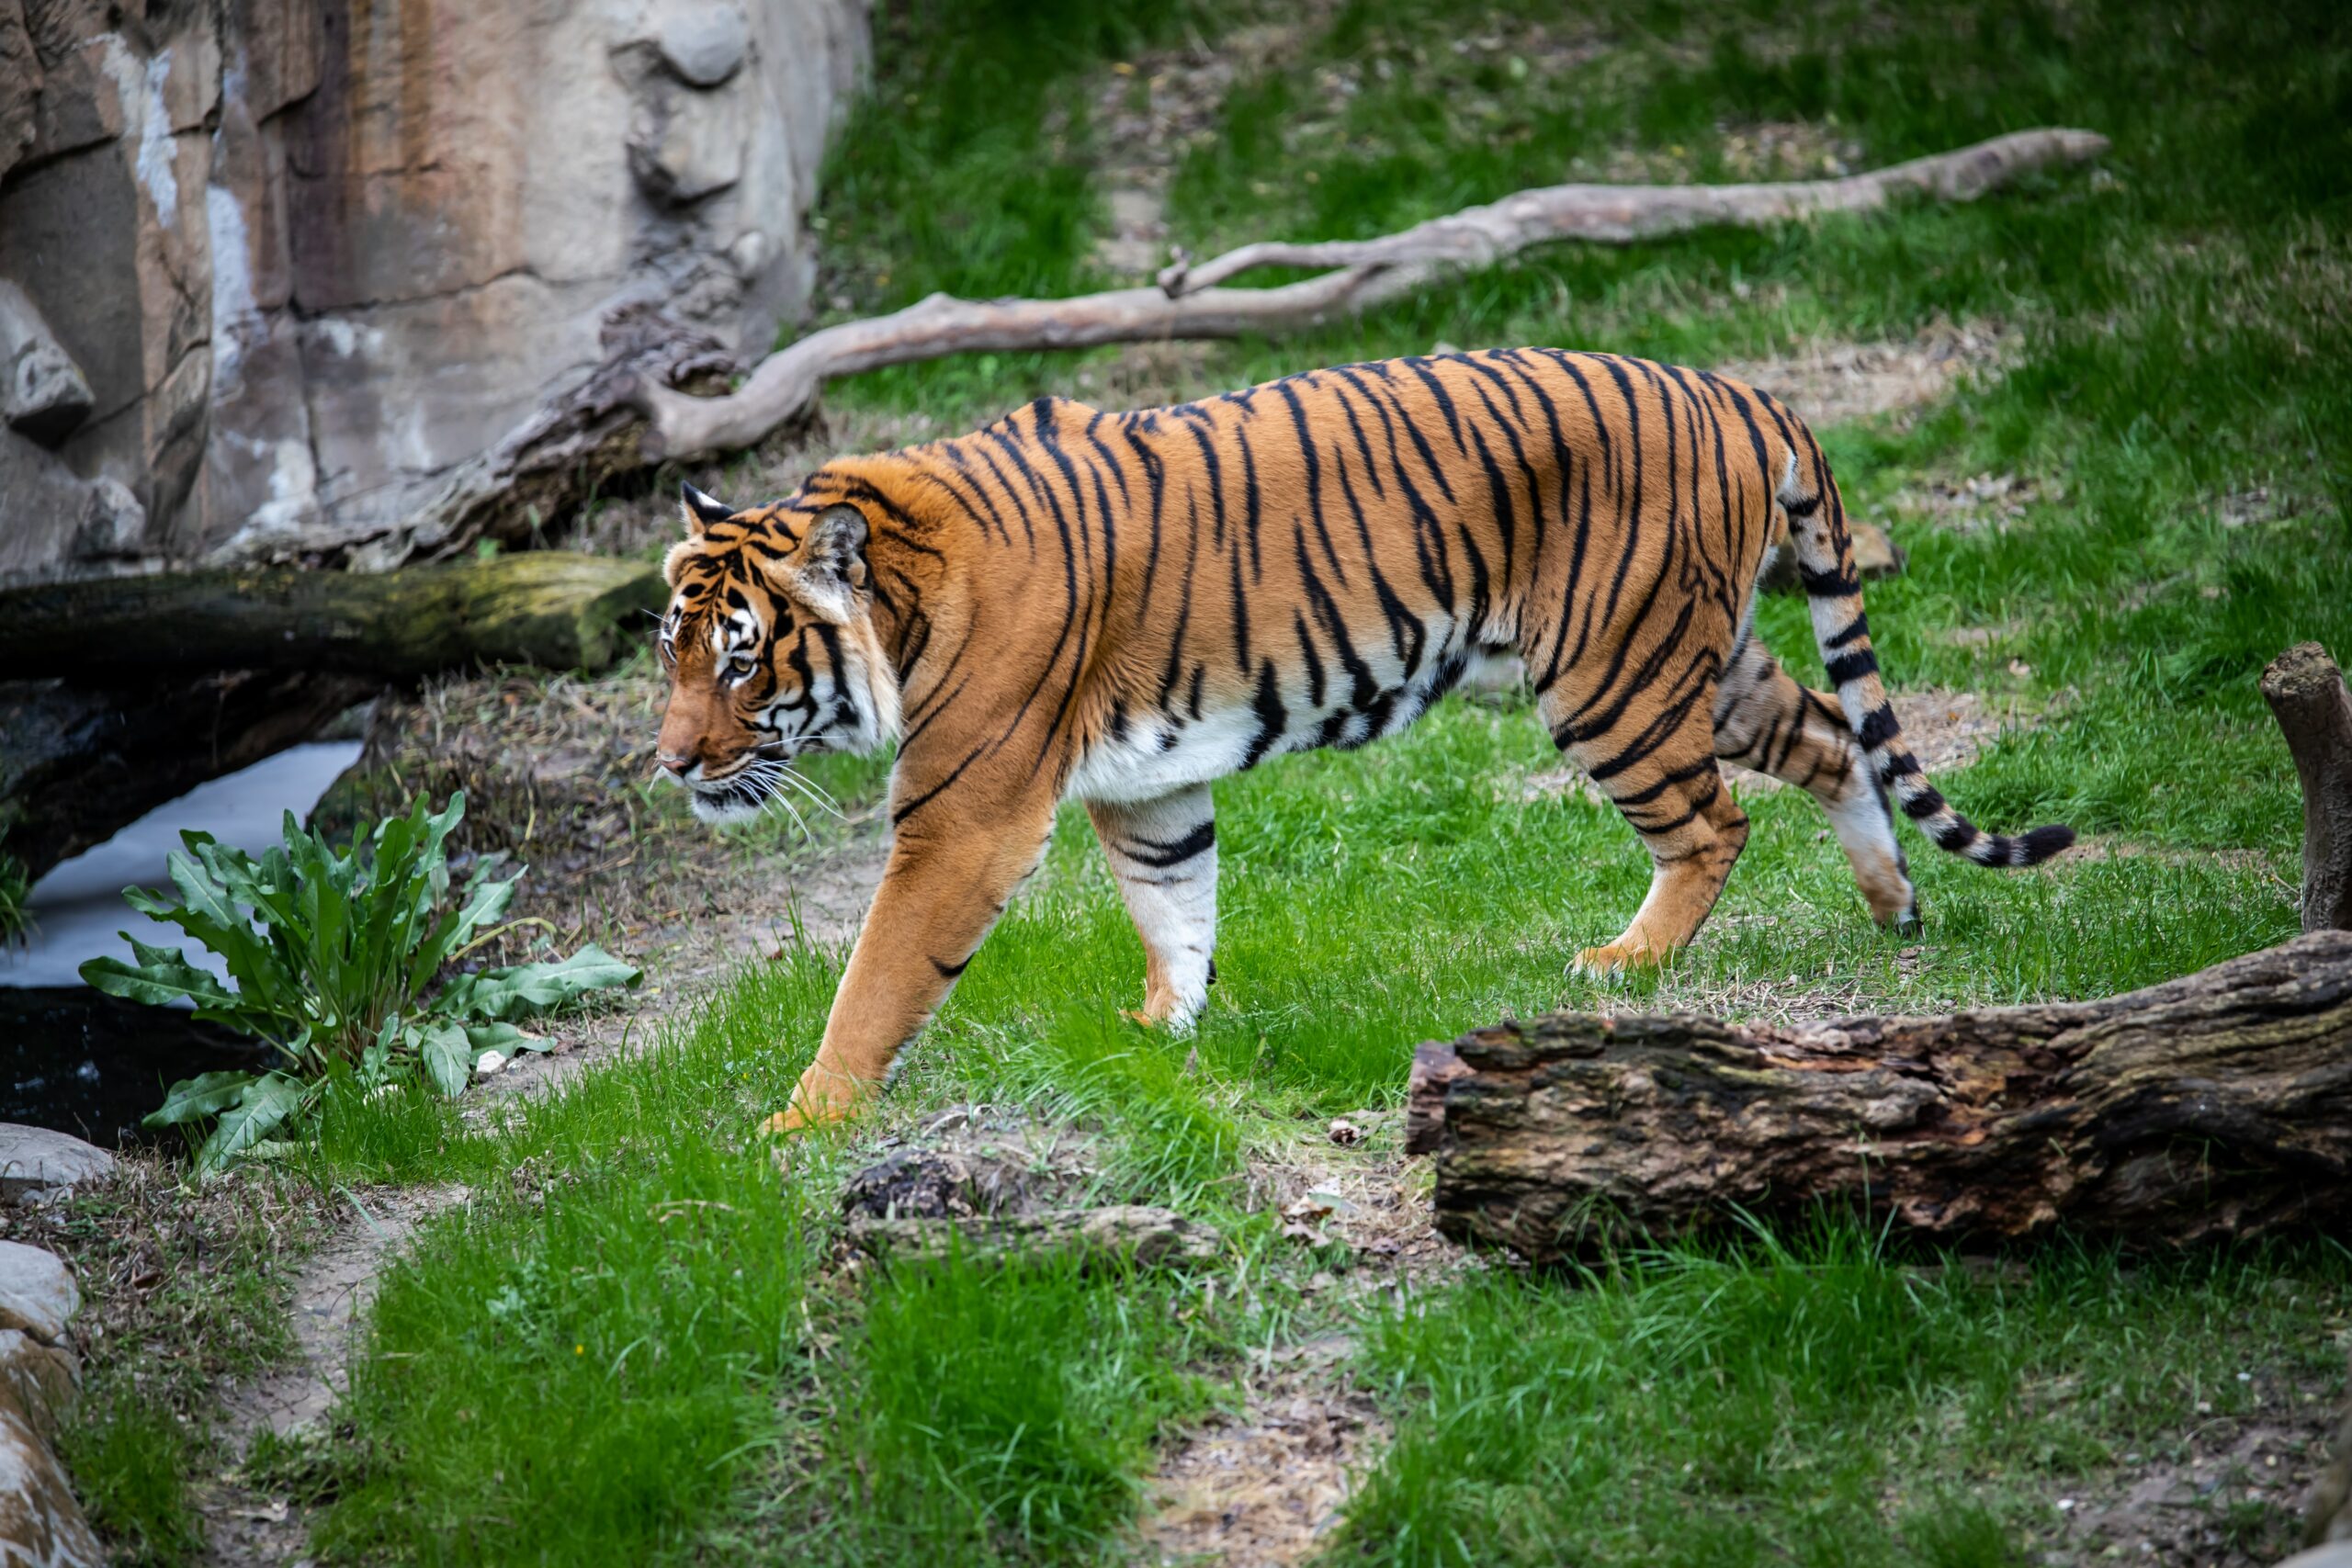 Bengal tiger, Diet, Habitat, & Facts